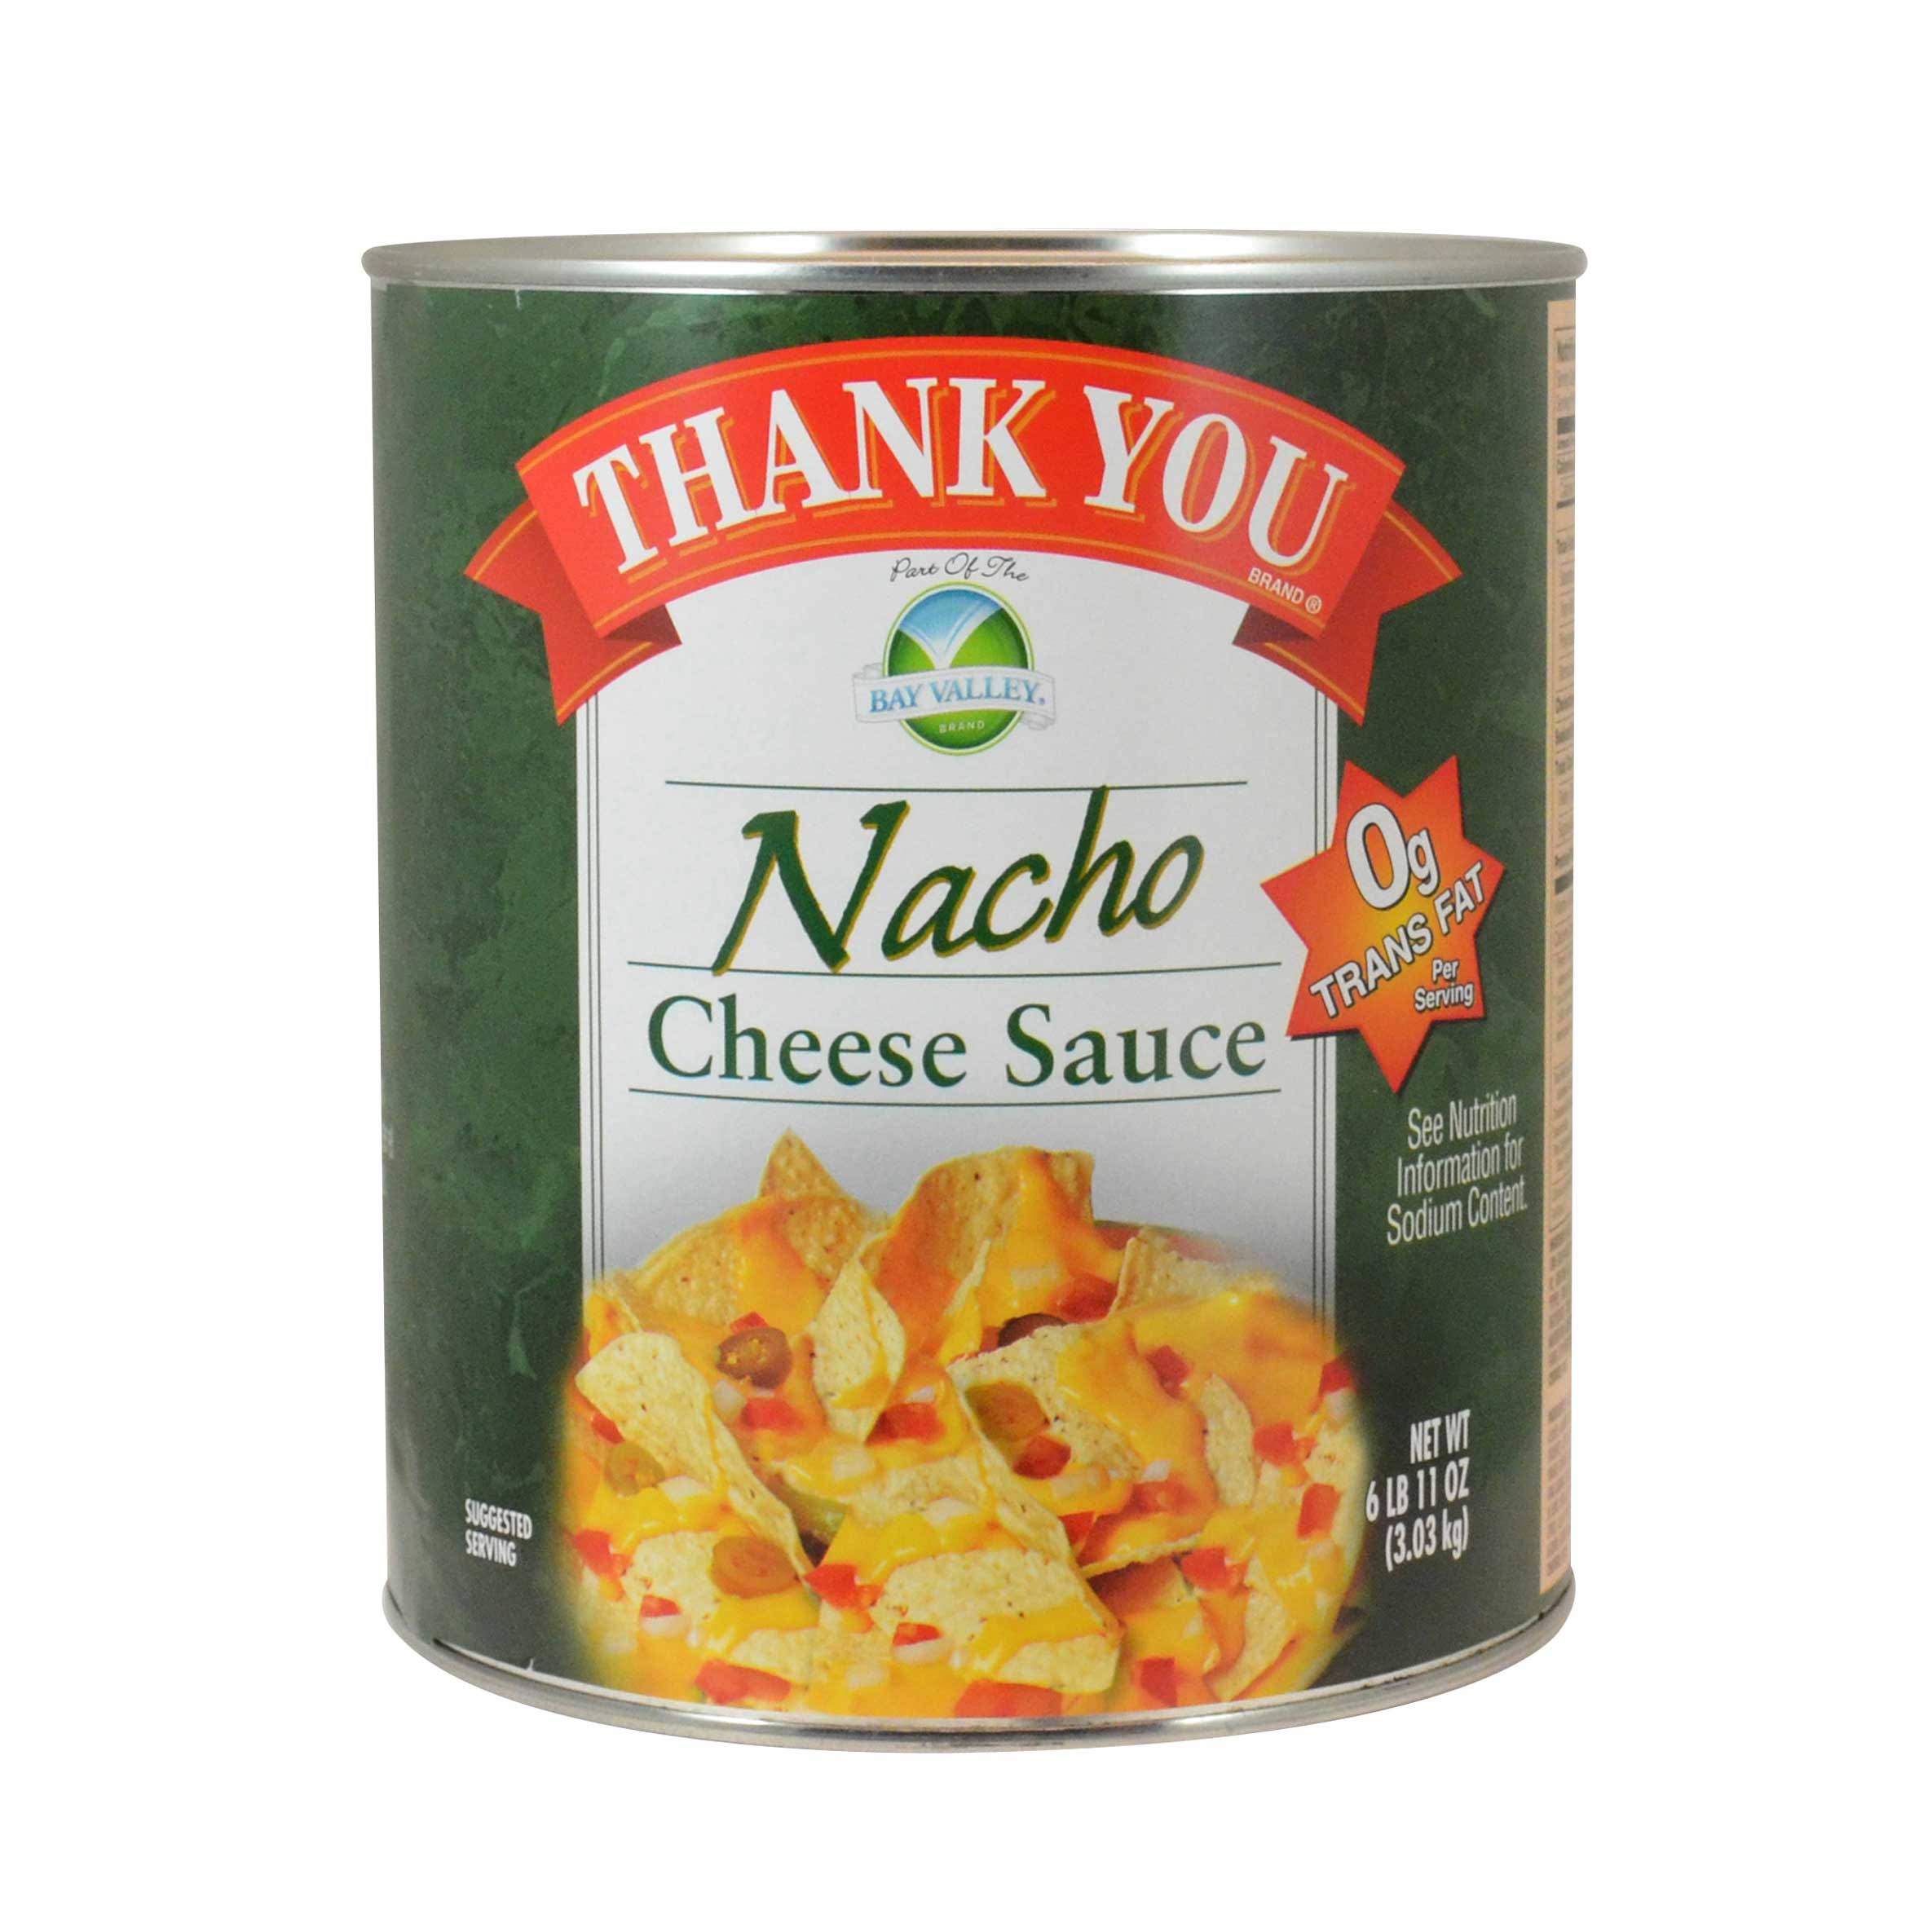 6 Packs : Sauce Premium Nacho Cheese.